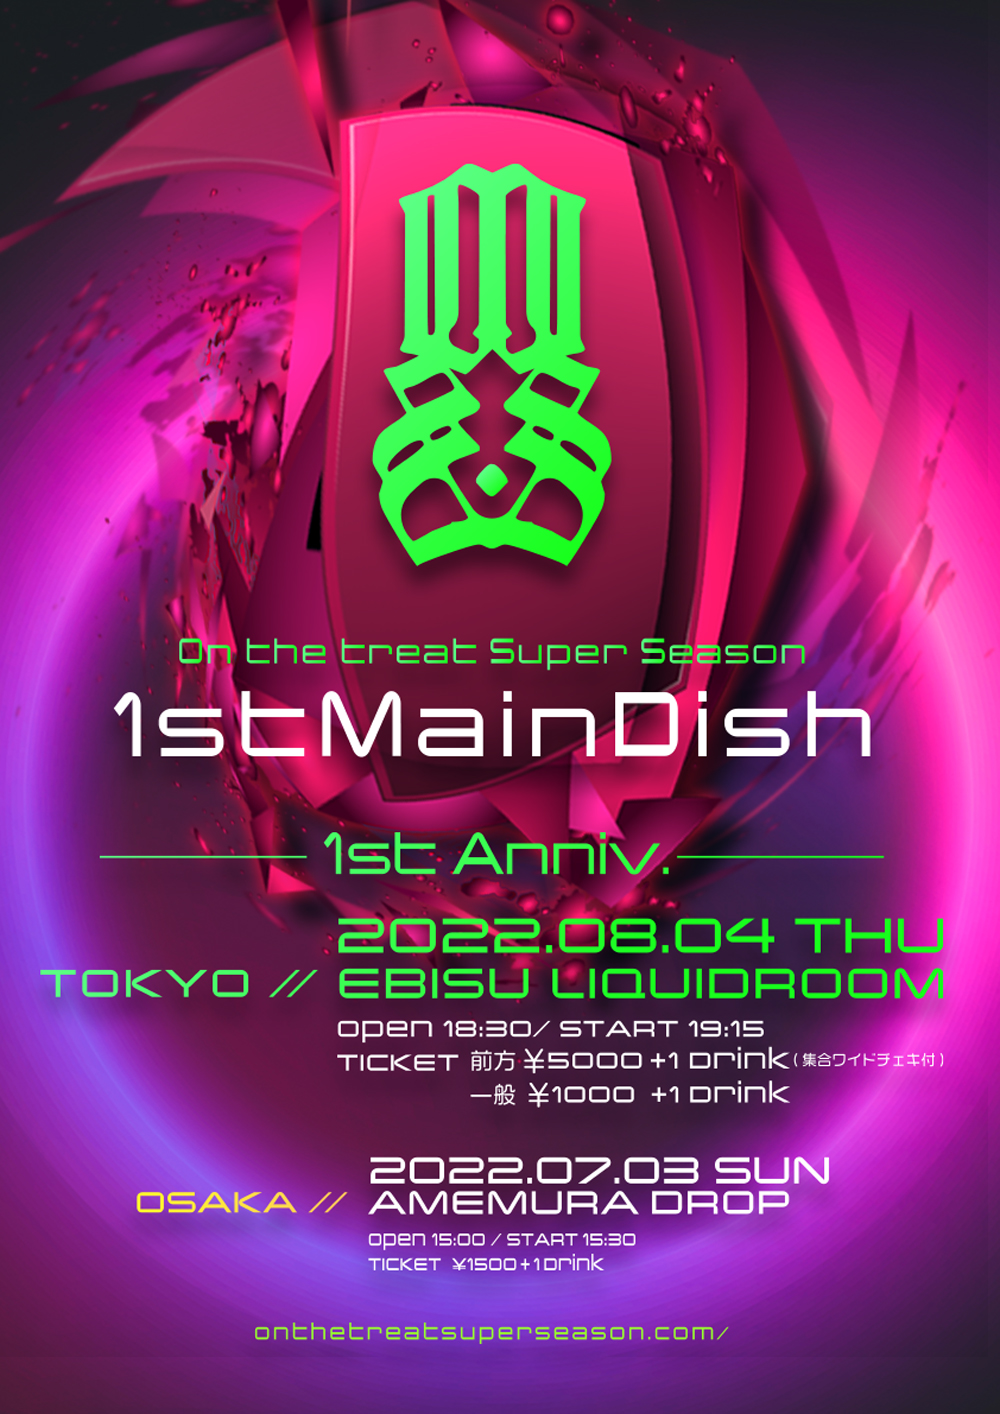 「OSS-1stMainDish TOKYO」